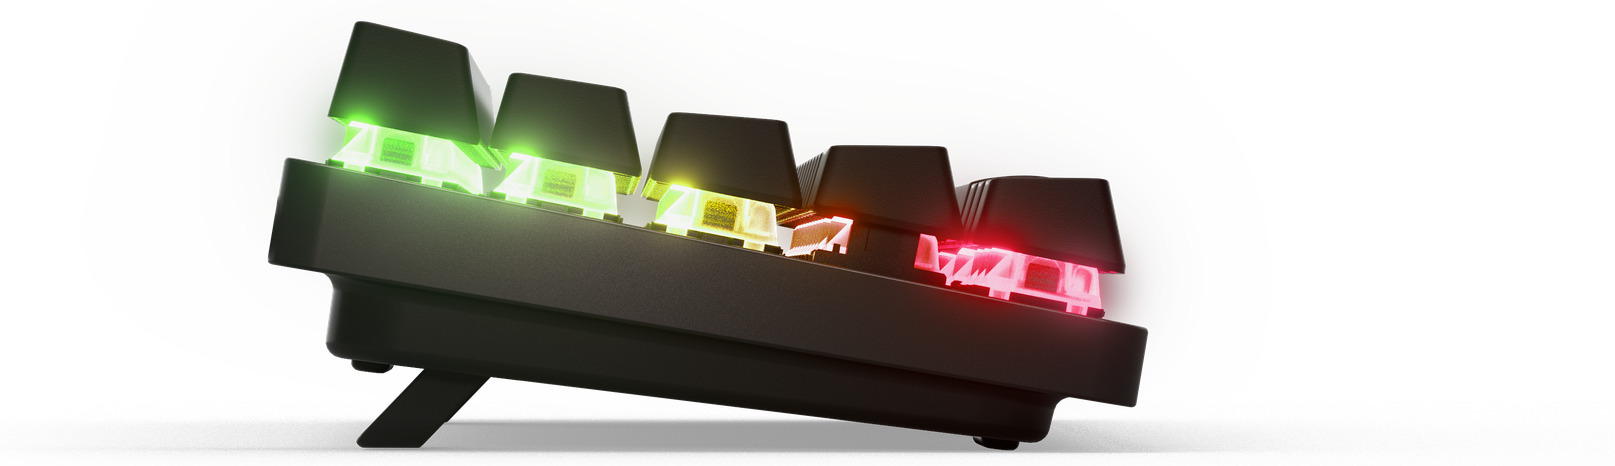 SteelSeries Apex Pro Mini langaton pelinäppäimistö - Gigantti verkkokauppa